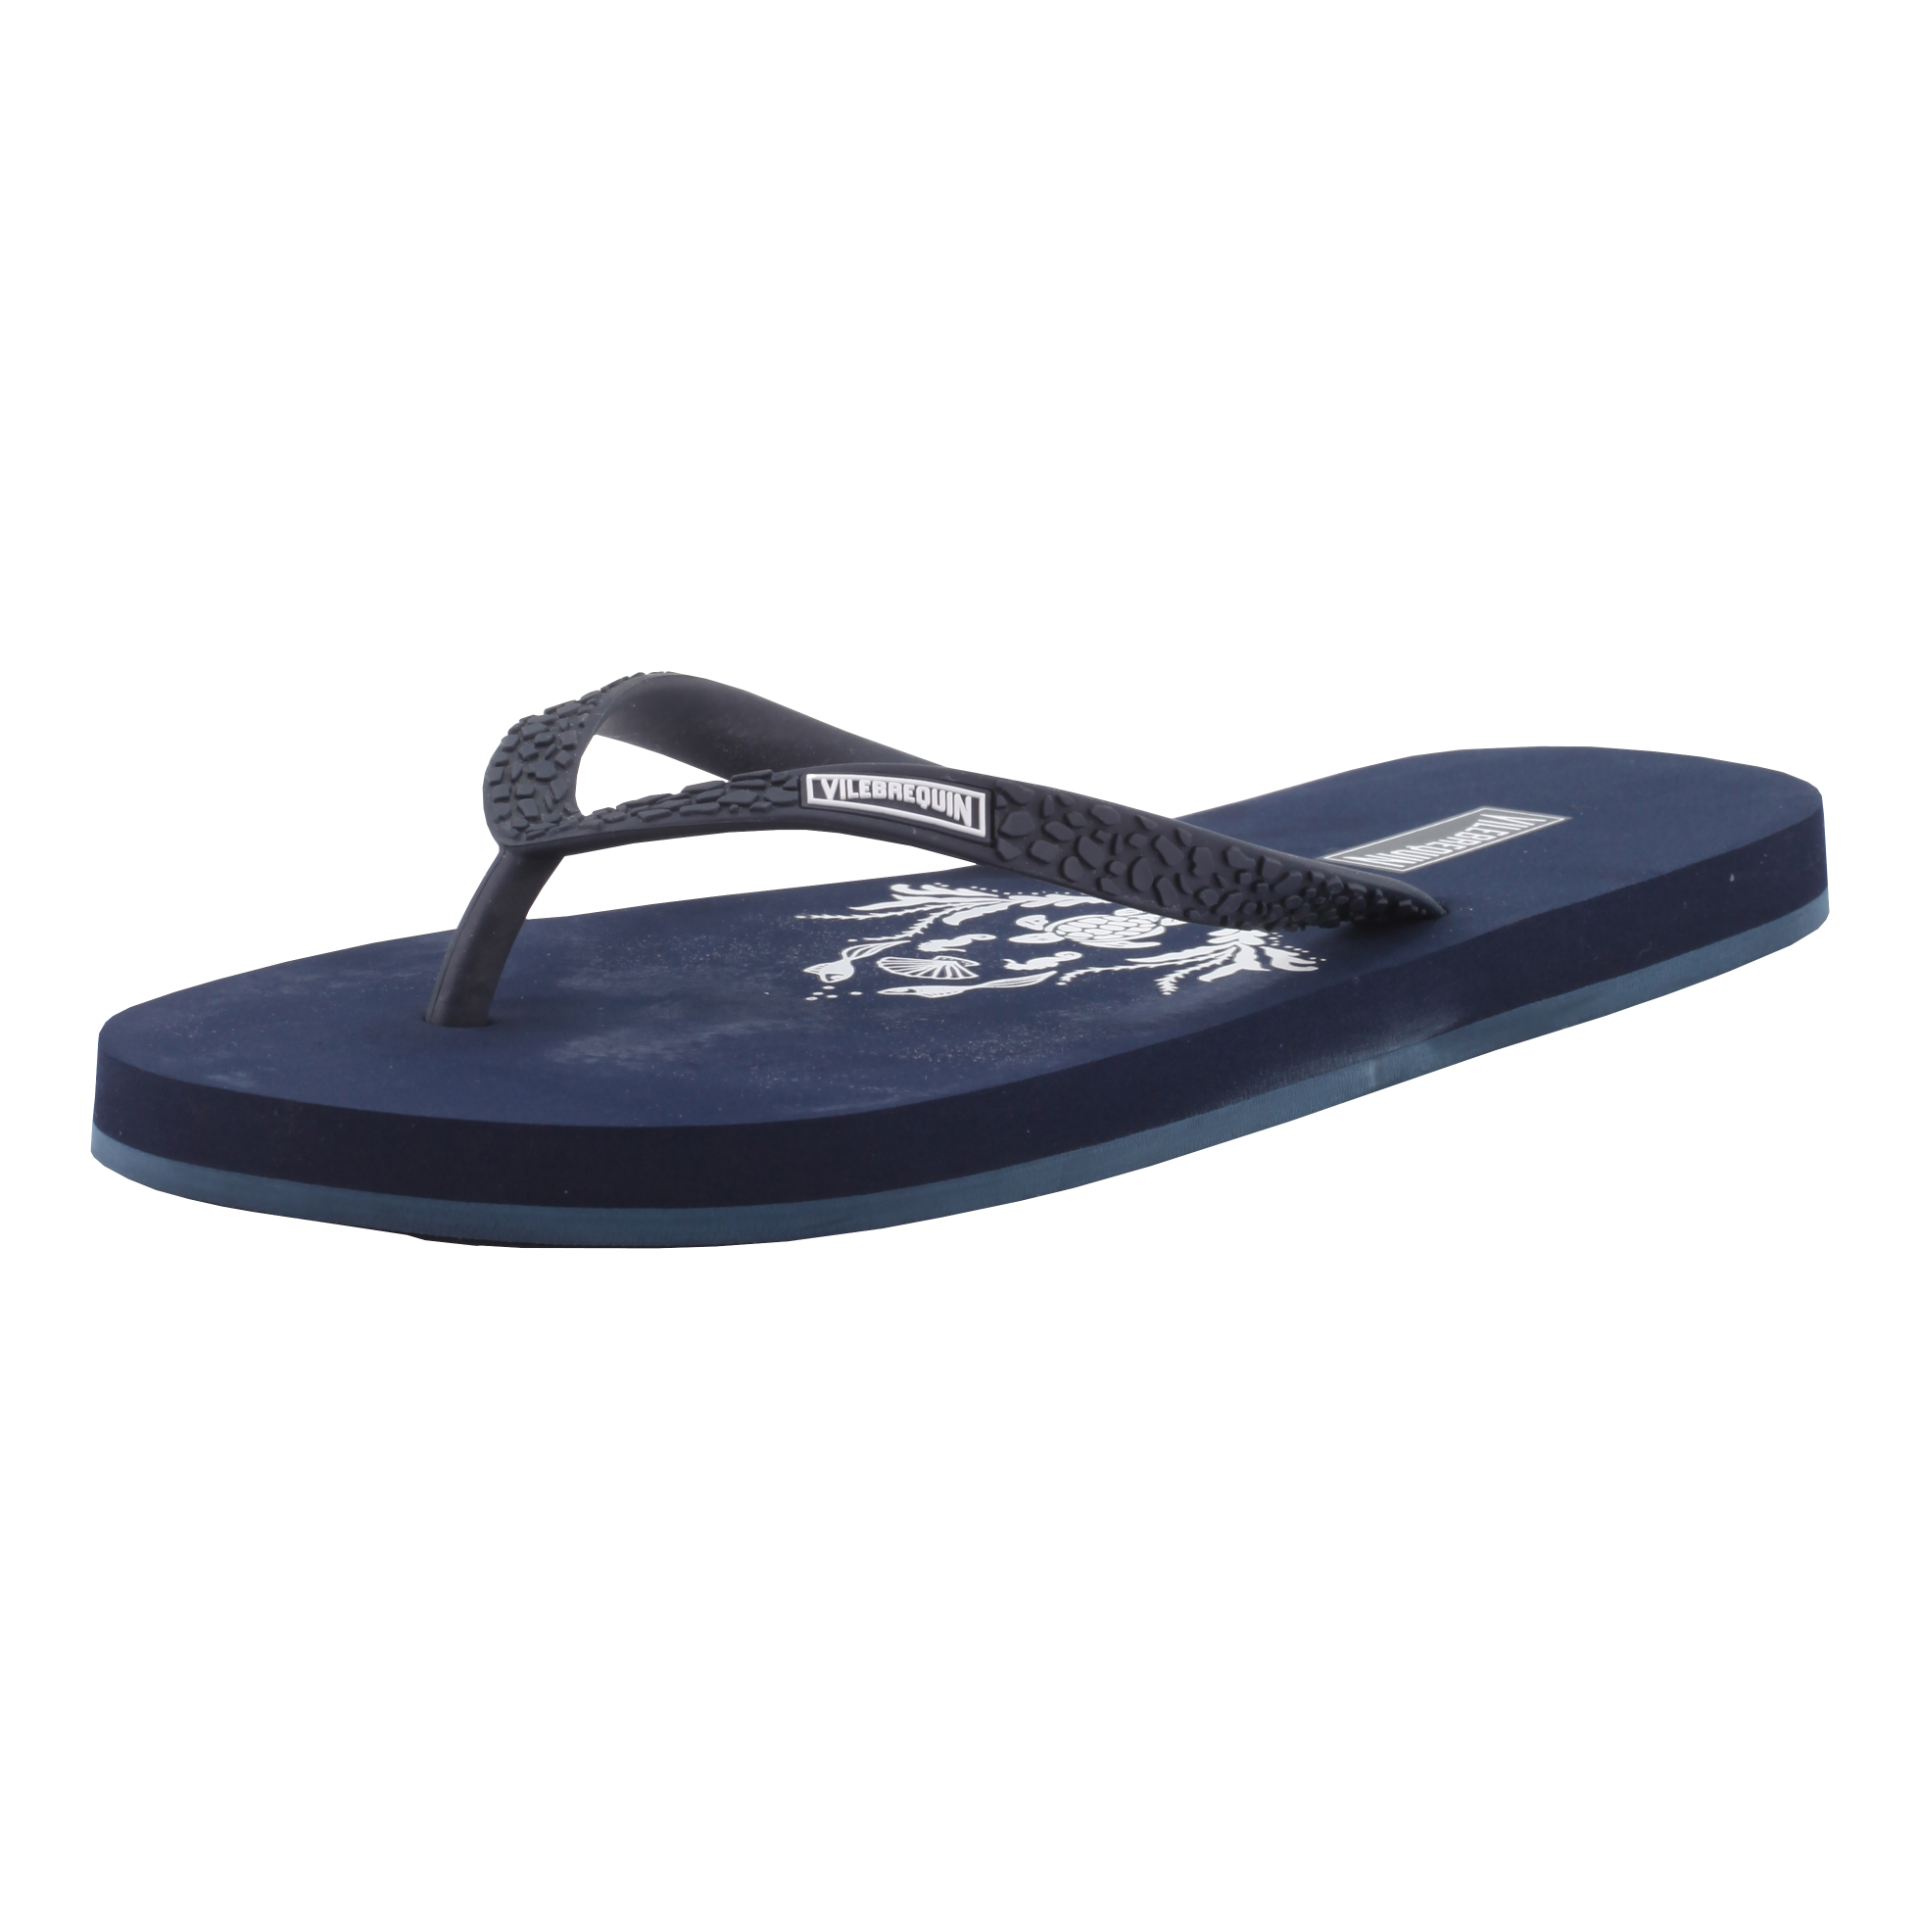 VILEBREQUIN Flip Flops Navy - Authentic & New - Size 3.5 / 4 - RRP Â£65+ ! - Image 5 of 7